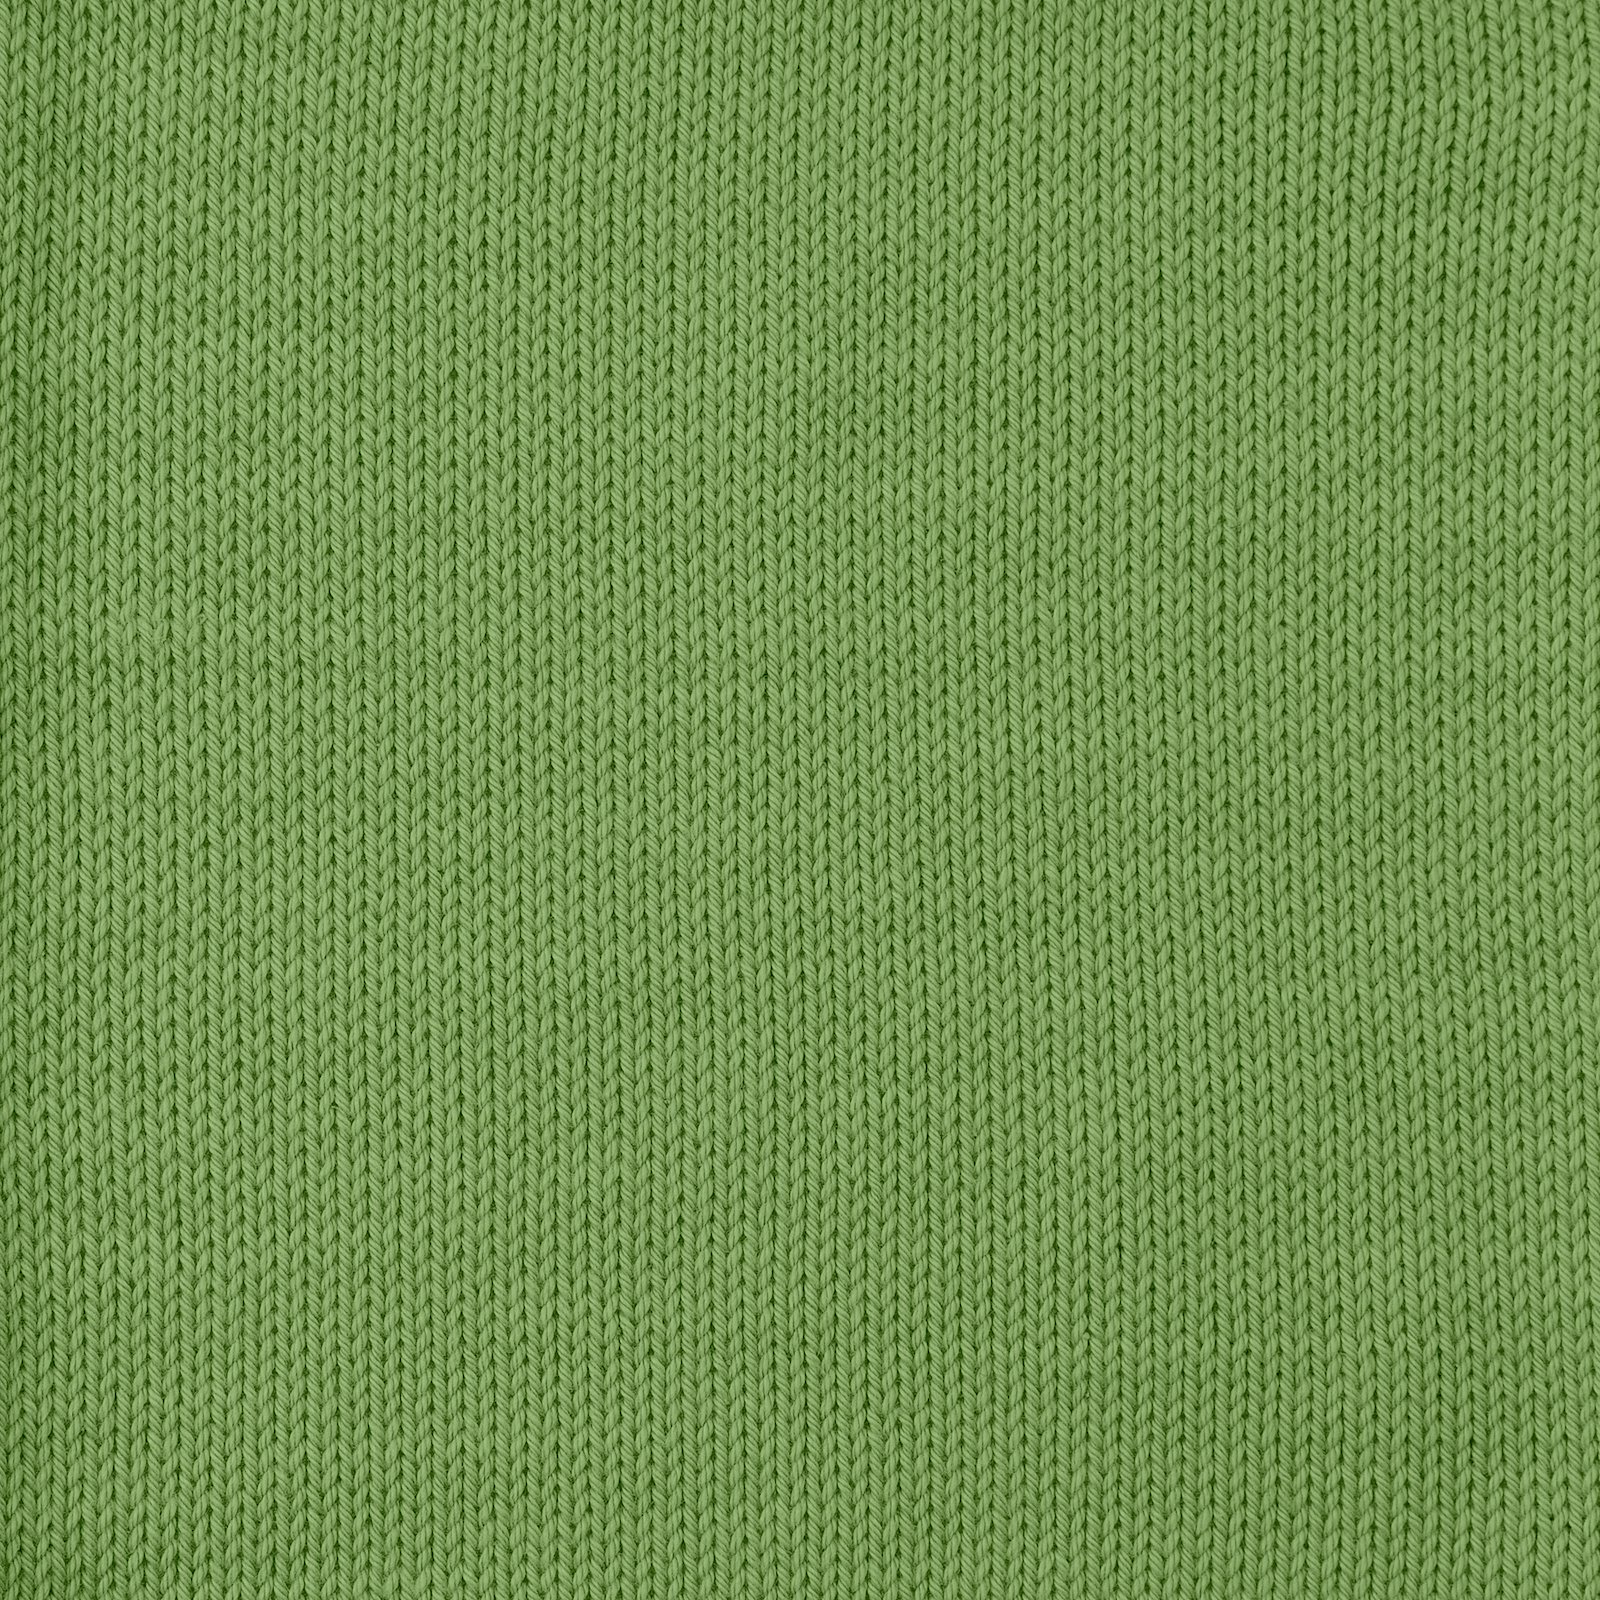 FRAYA, 100% cotton yarn "Colourful", grass green 90060076_sskit